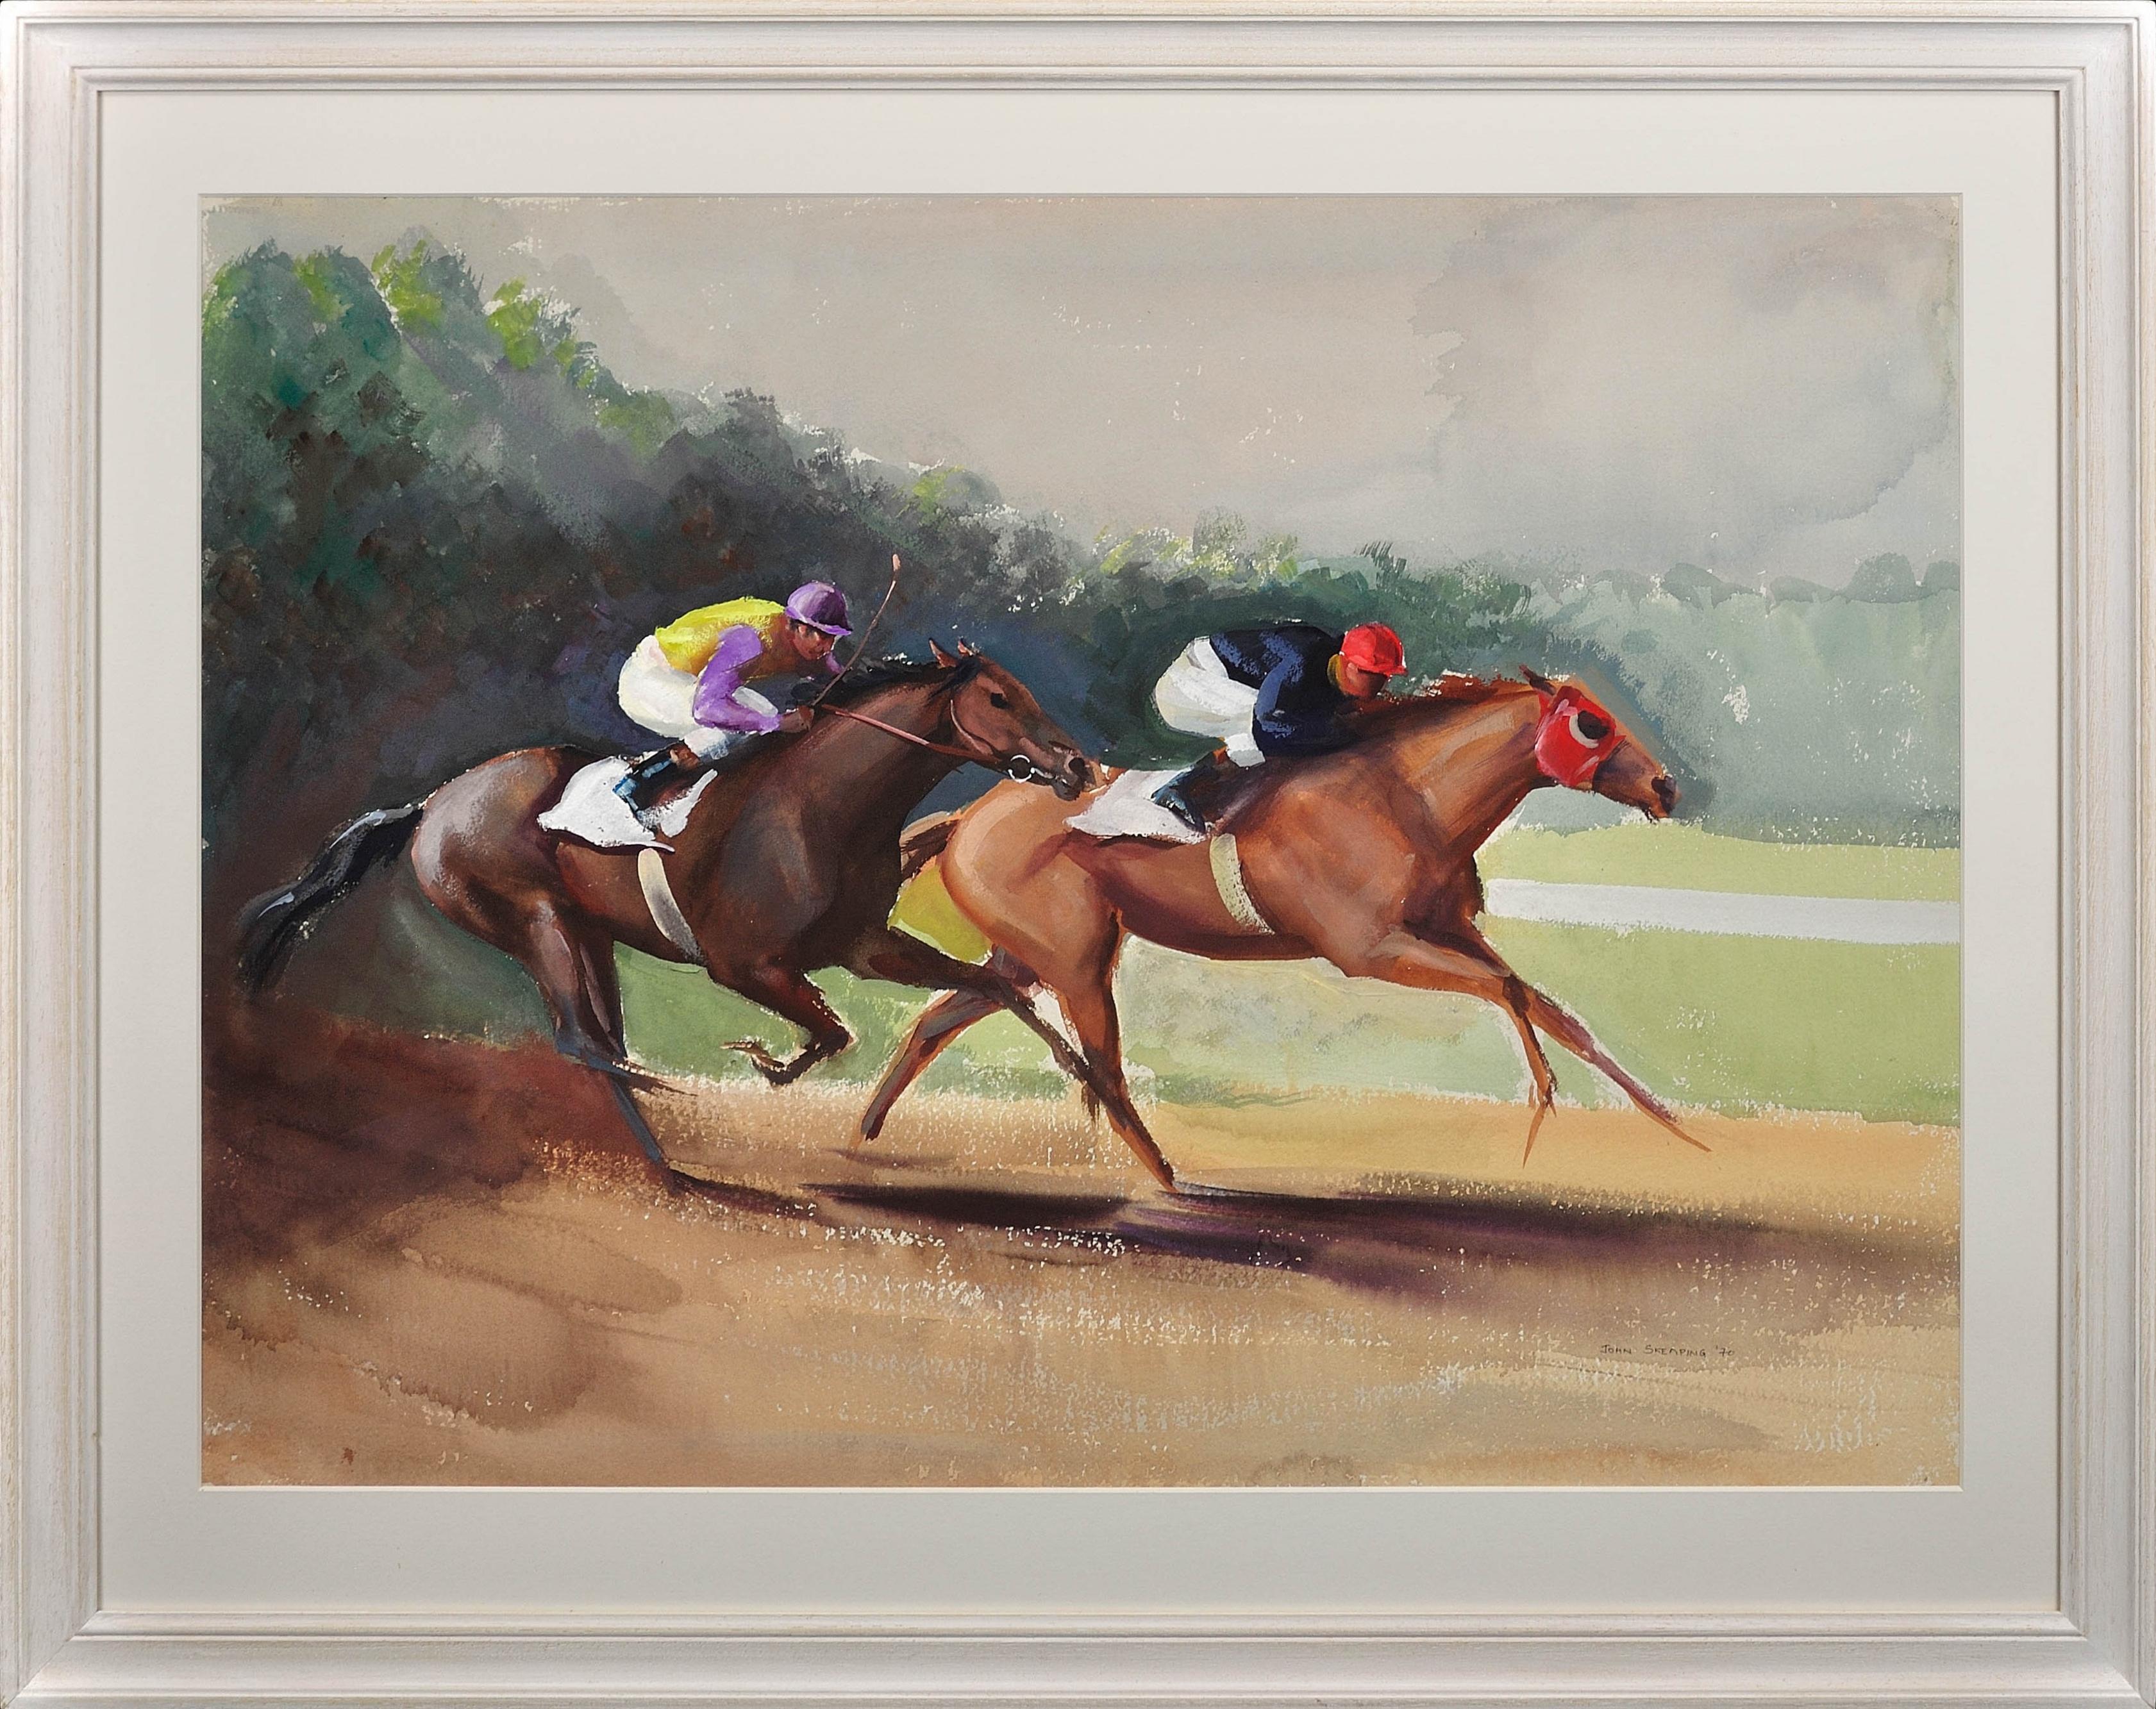 John Rattenbury Skeaping Animal Art - A Tight Finish. 1970.Race Horses. Final Furlong. Equine.Jockeys.Horse Racing.